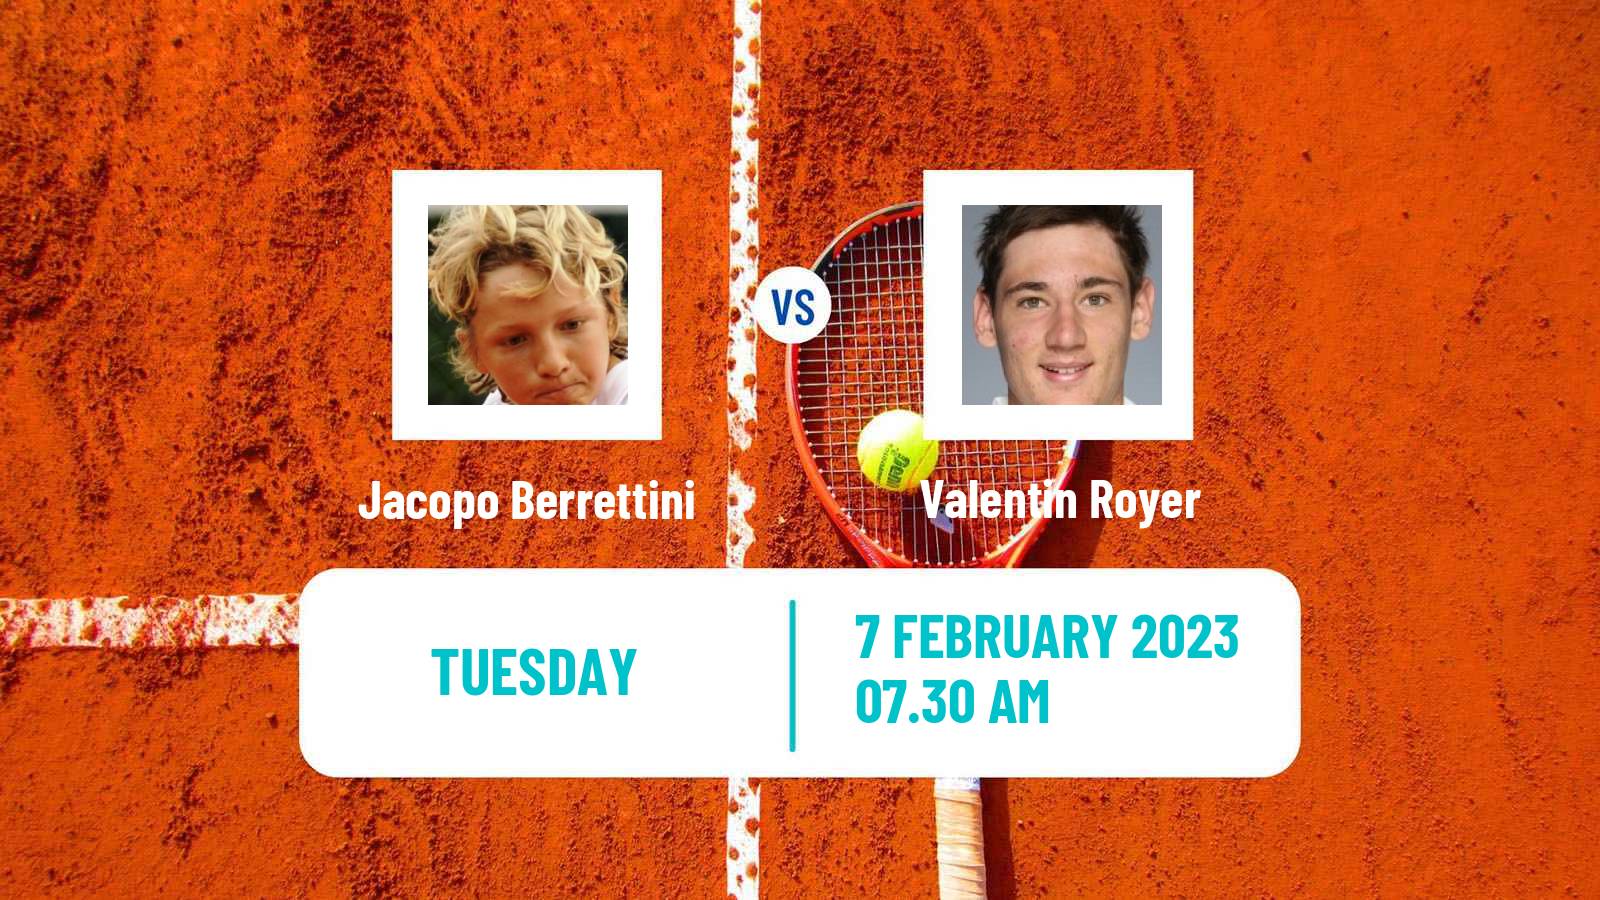 Tennis ITF Tournaments Jacopo Berrettini - Valentin Royer